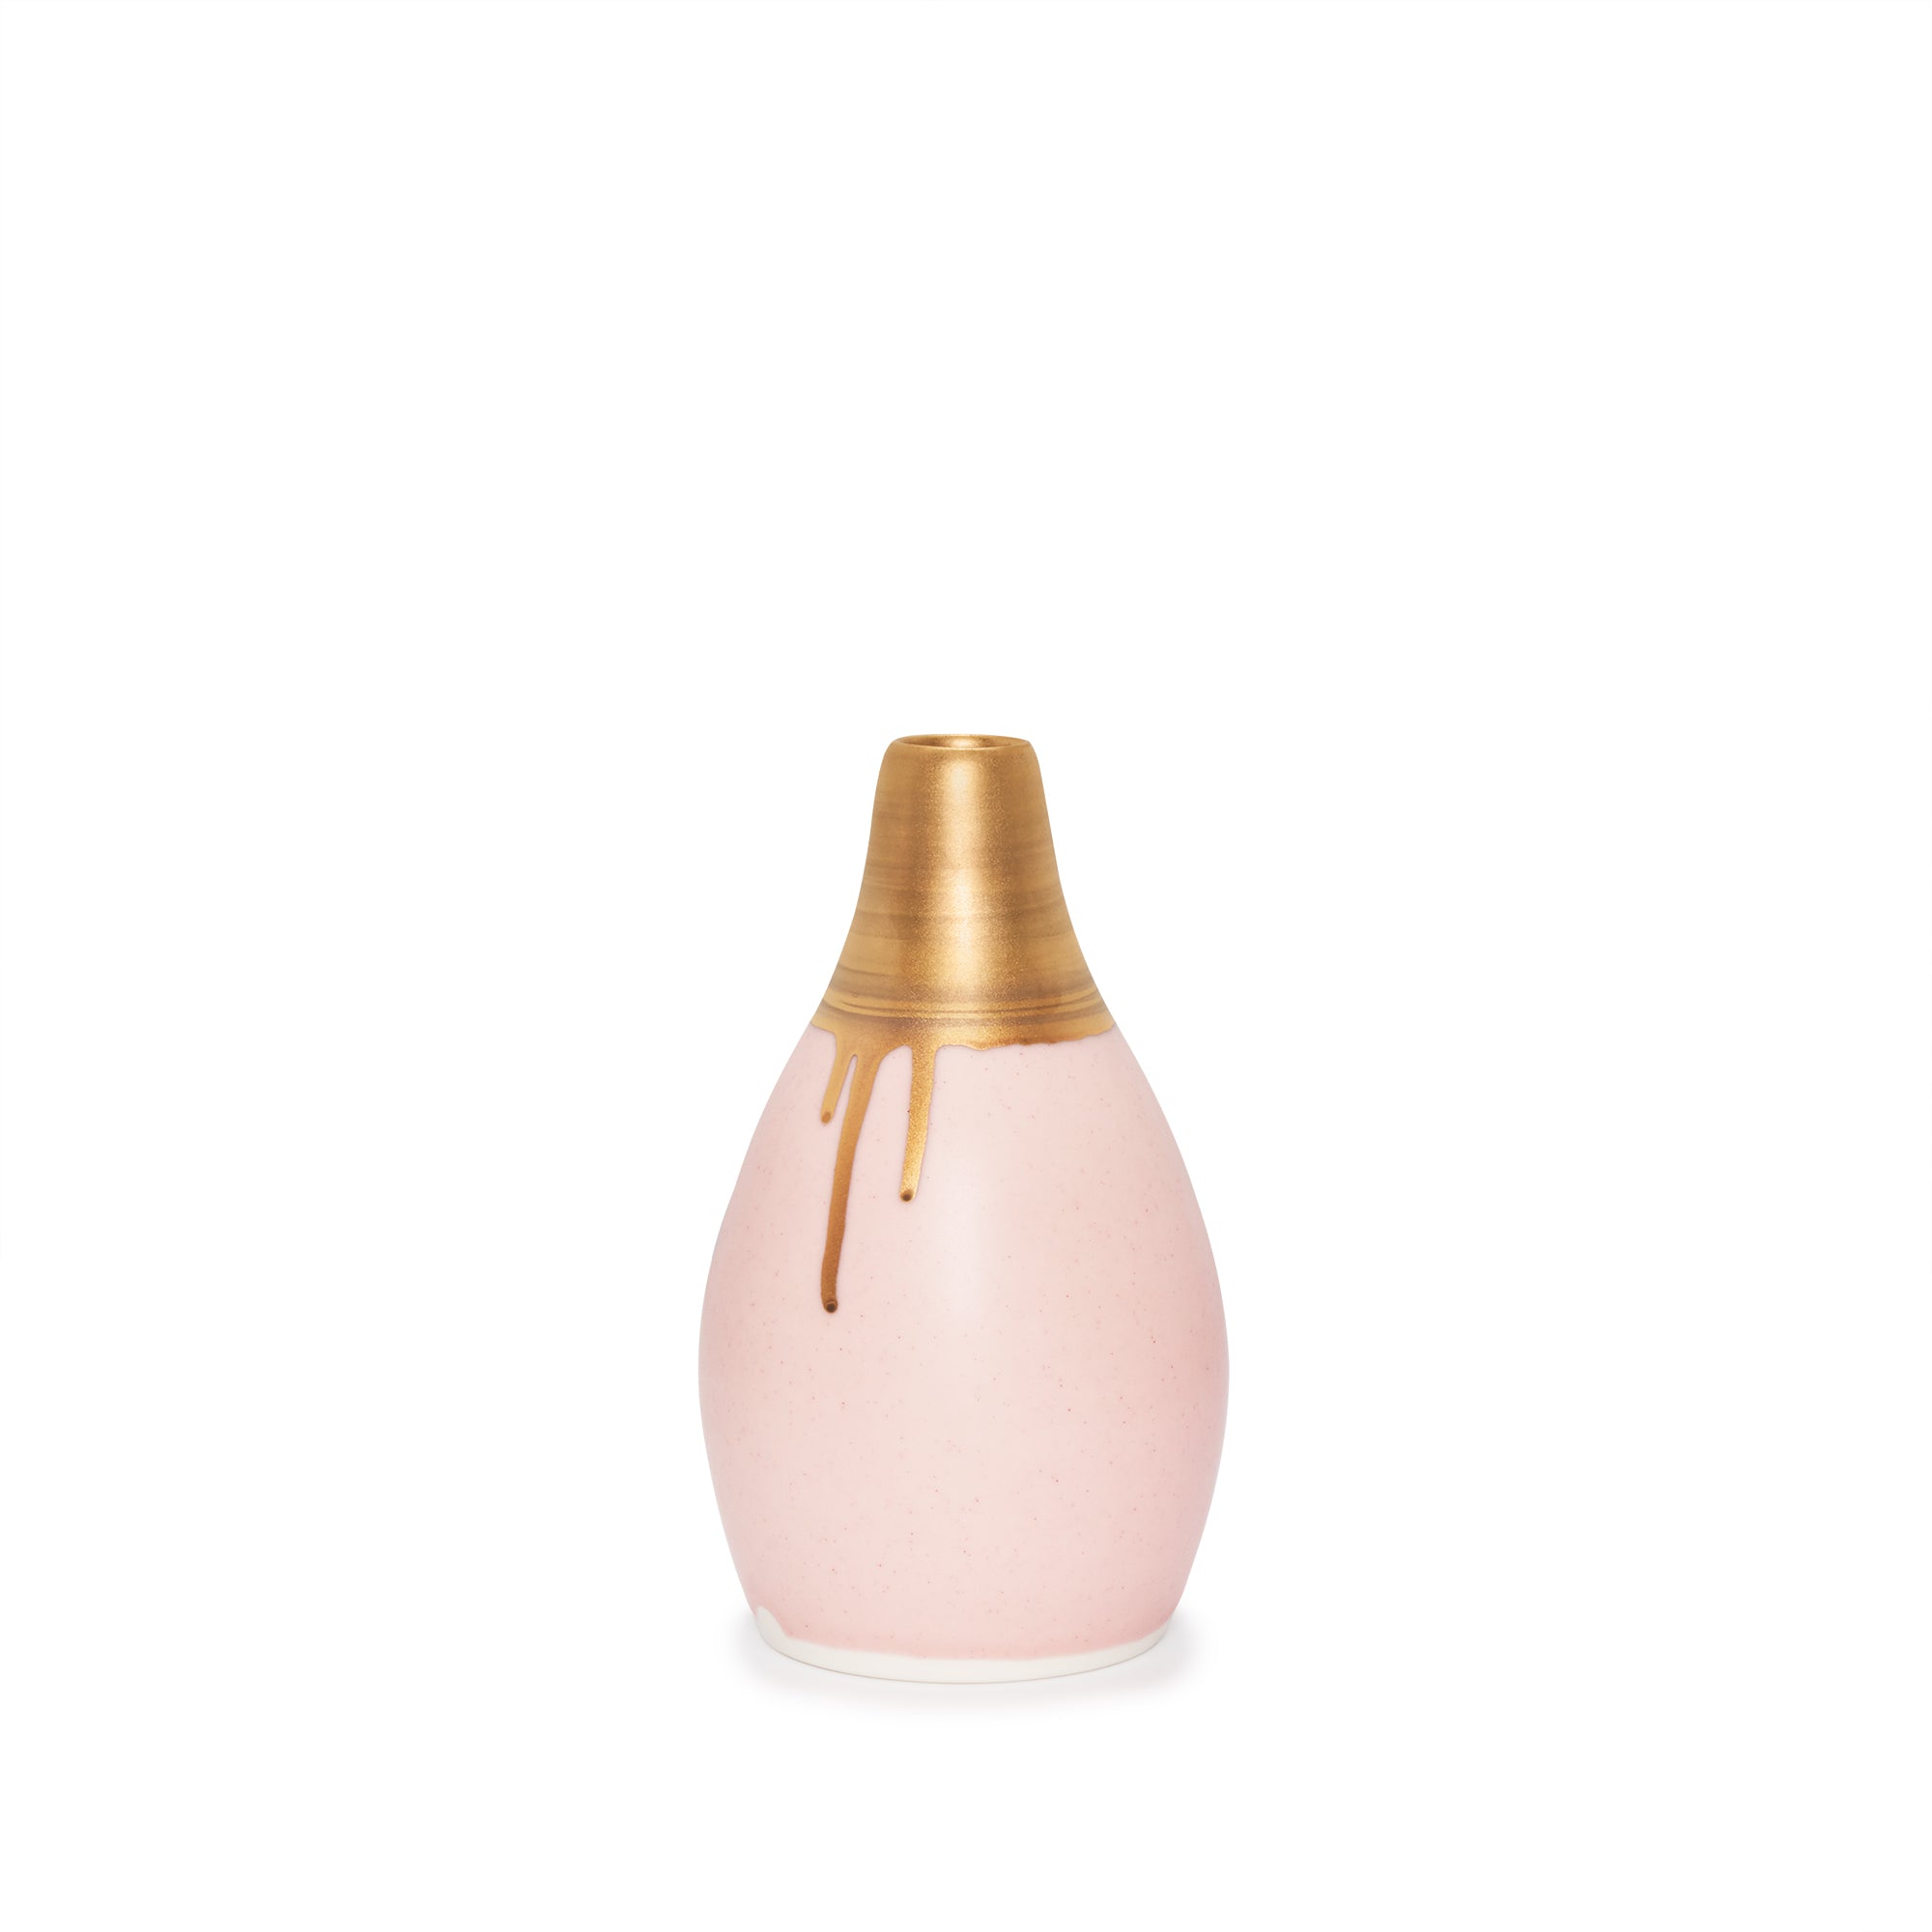 Gramercy Bottle Vase - Ltd. Edition Matte Pink & Gold